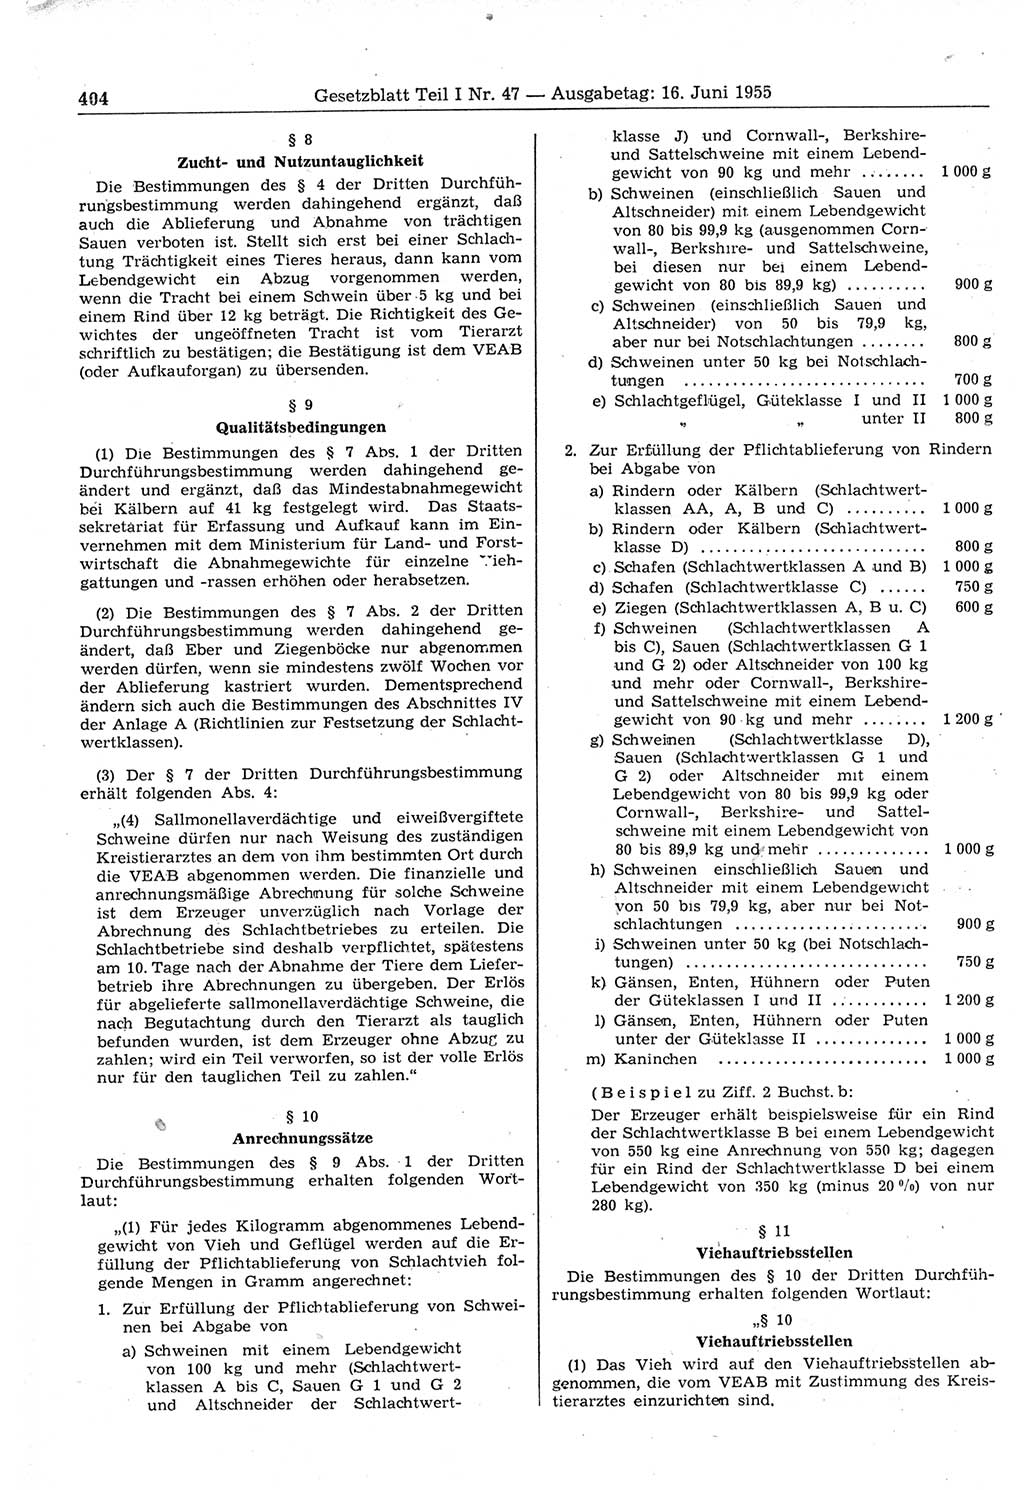 Gesetzblatt (GBl.) der Deutschen Demokratischen Republik (DDR) Teil Ⅰ 1955, Seite 404 (GBl. DDR Ⅰ 1955, S. 404)